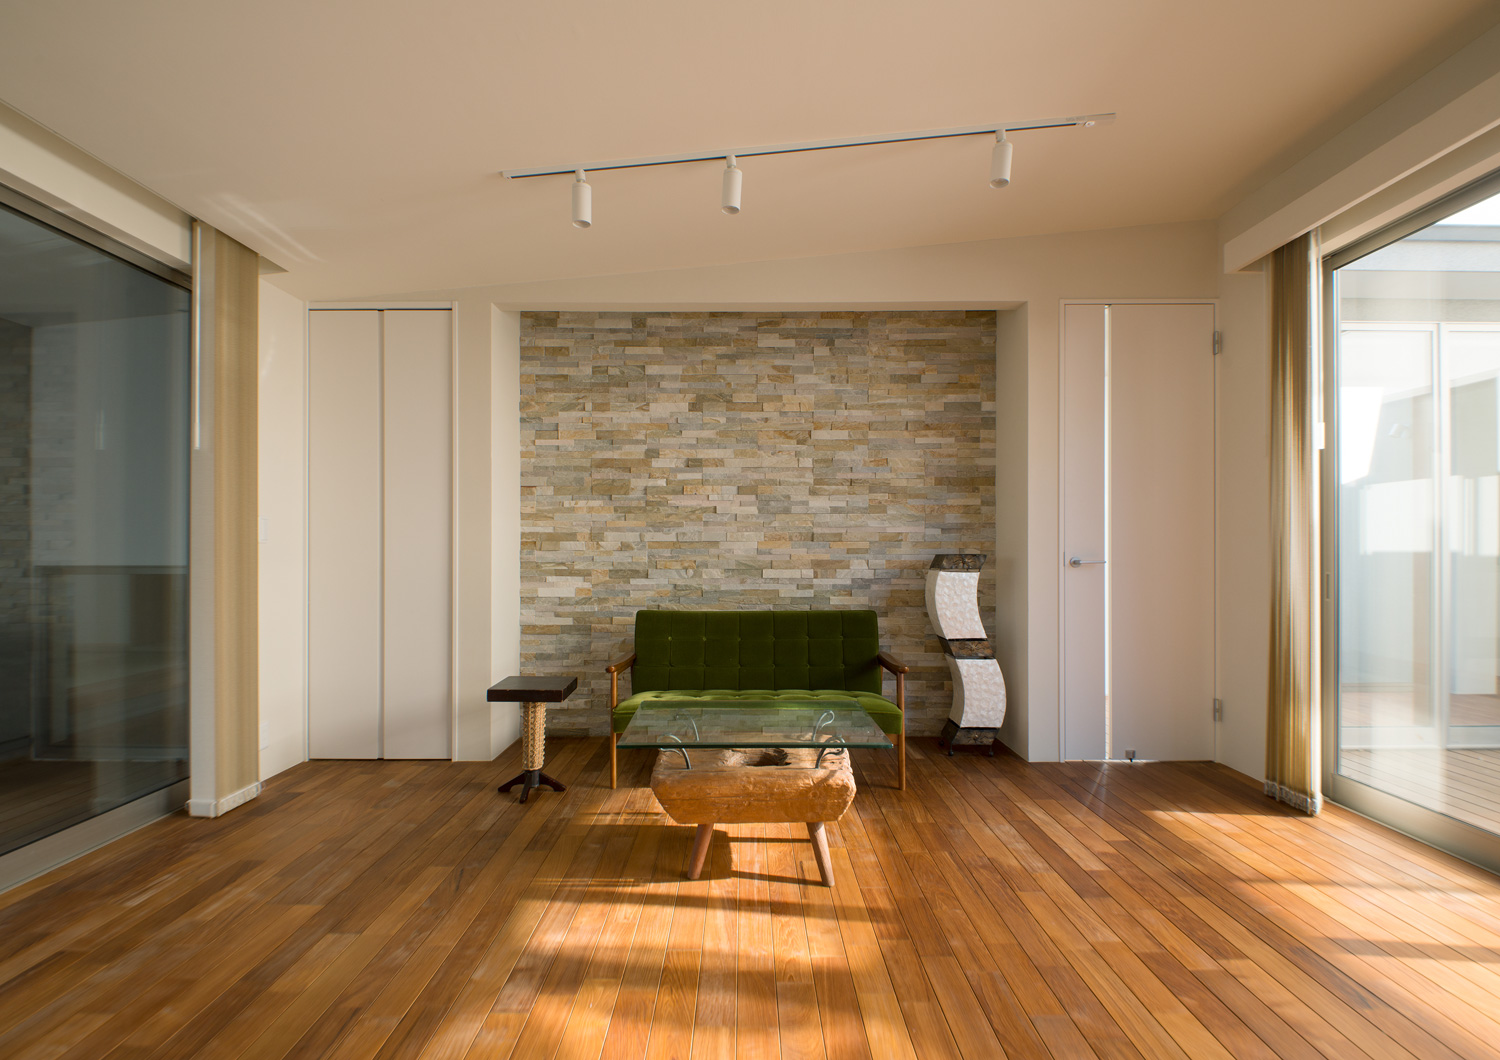 タイルのアクセントウォールの前に緑色のソファーやガラスのサイドテーブルを置いたフローリングのLDK・デザイン住宅